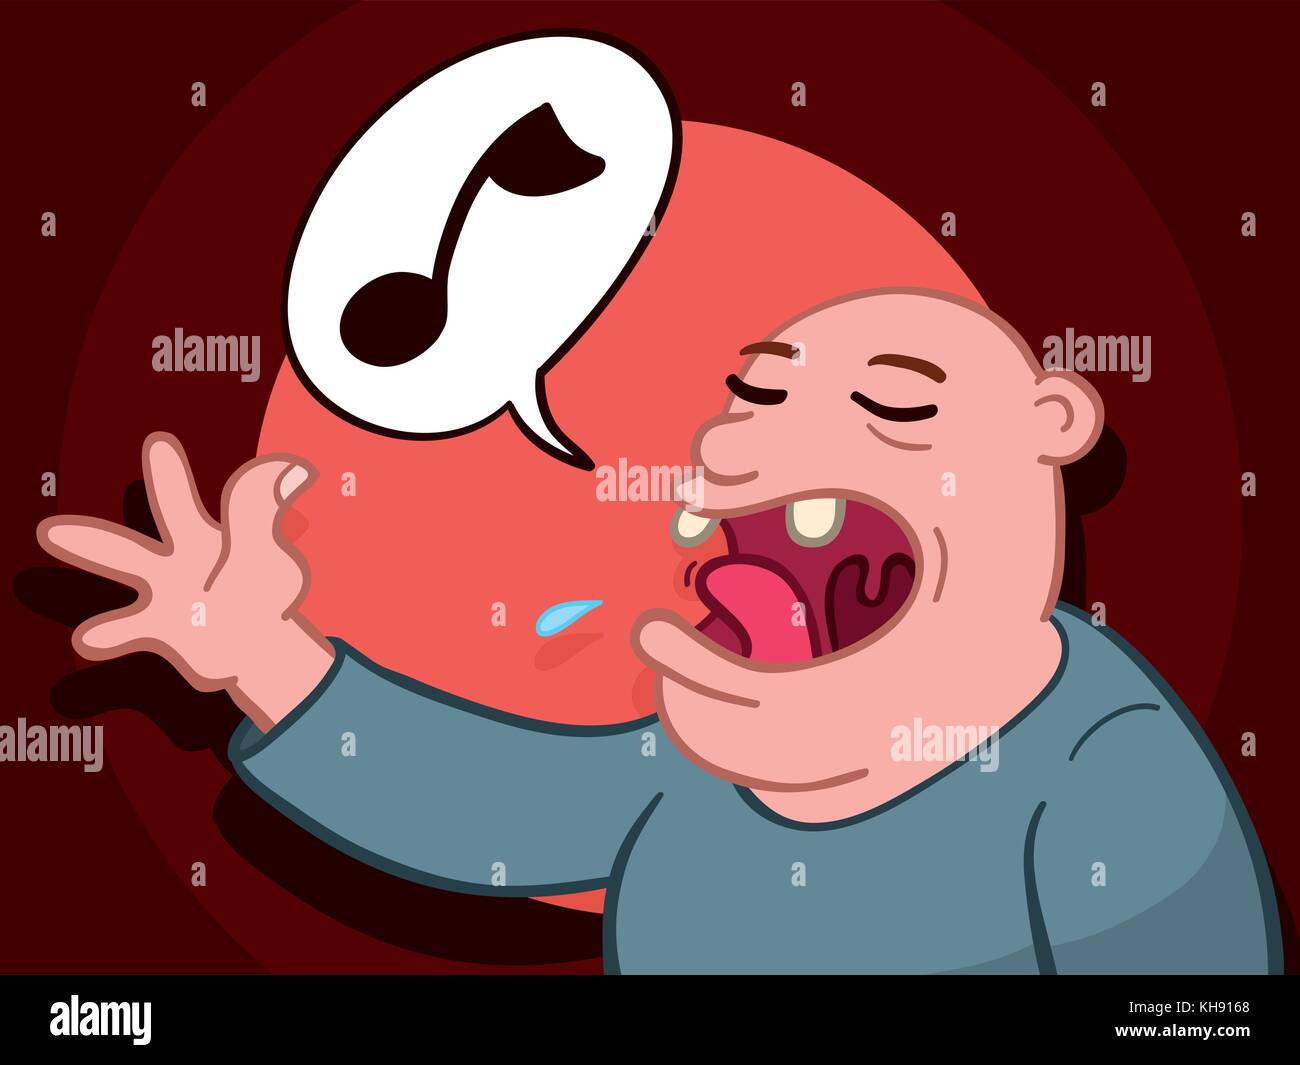 Cartoon illustration d'un homme chauve chanter une chanson avec sa bouche ouverte montrant deux dents avec une note de musique dans une bulle comme il l'effectue Illustration de Vecteur